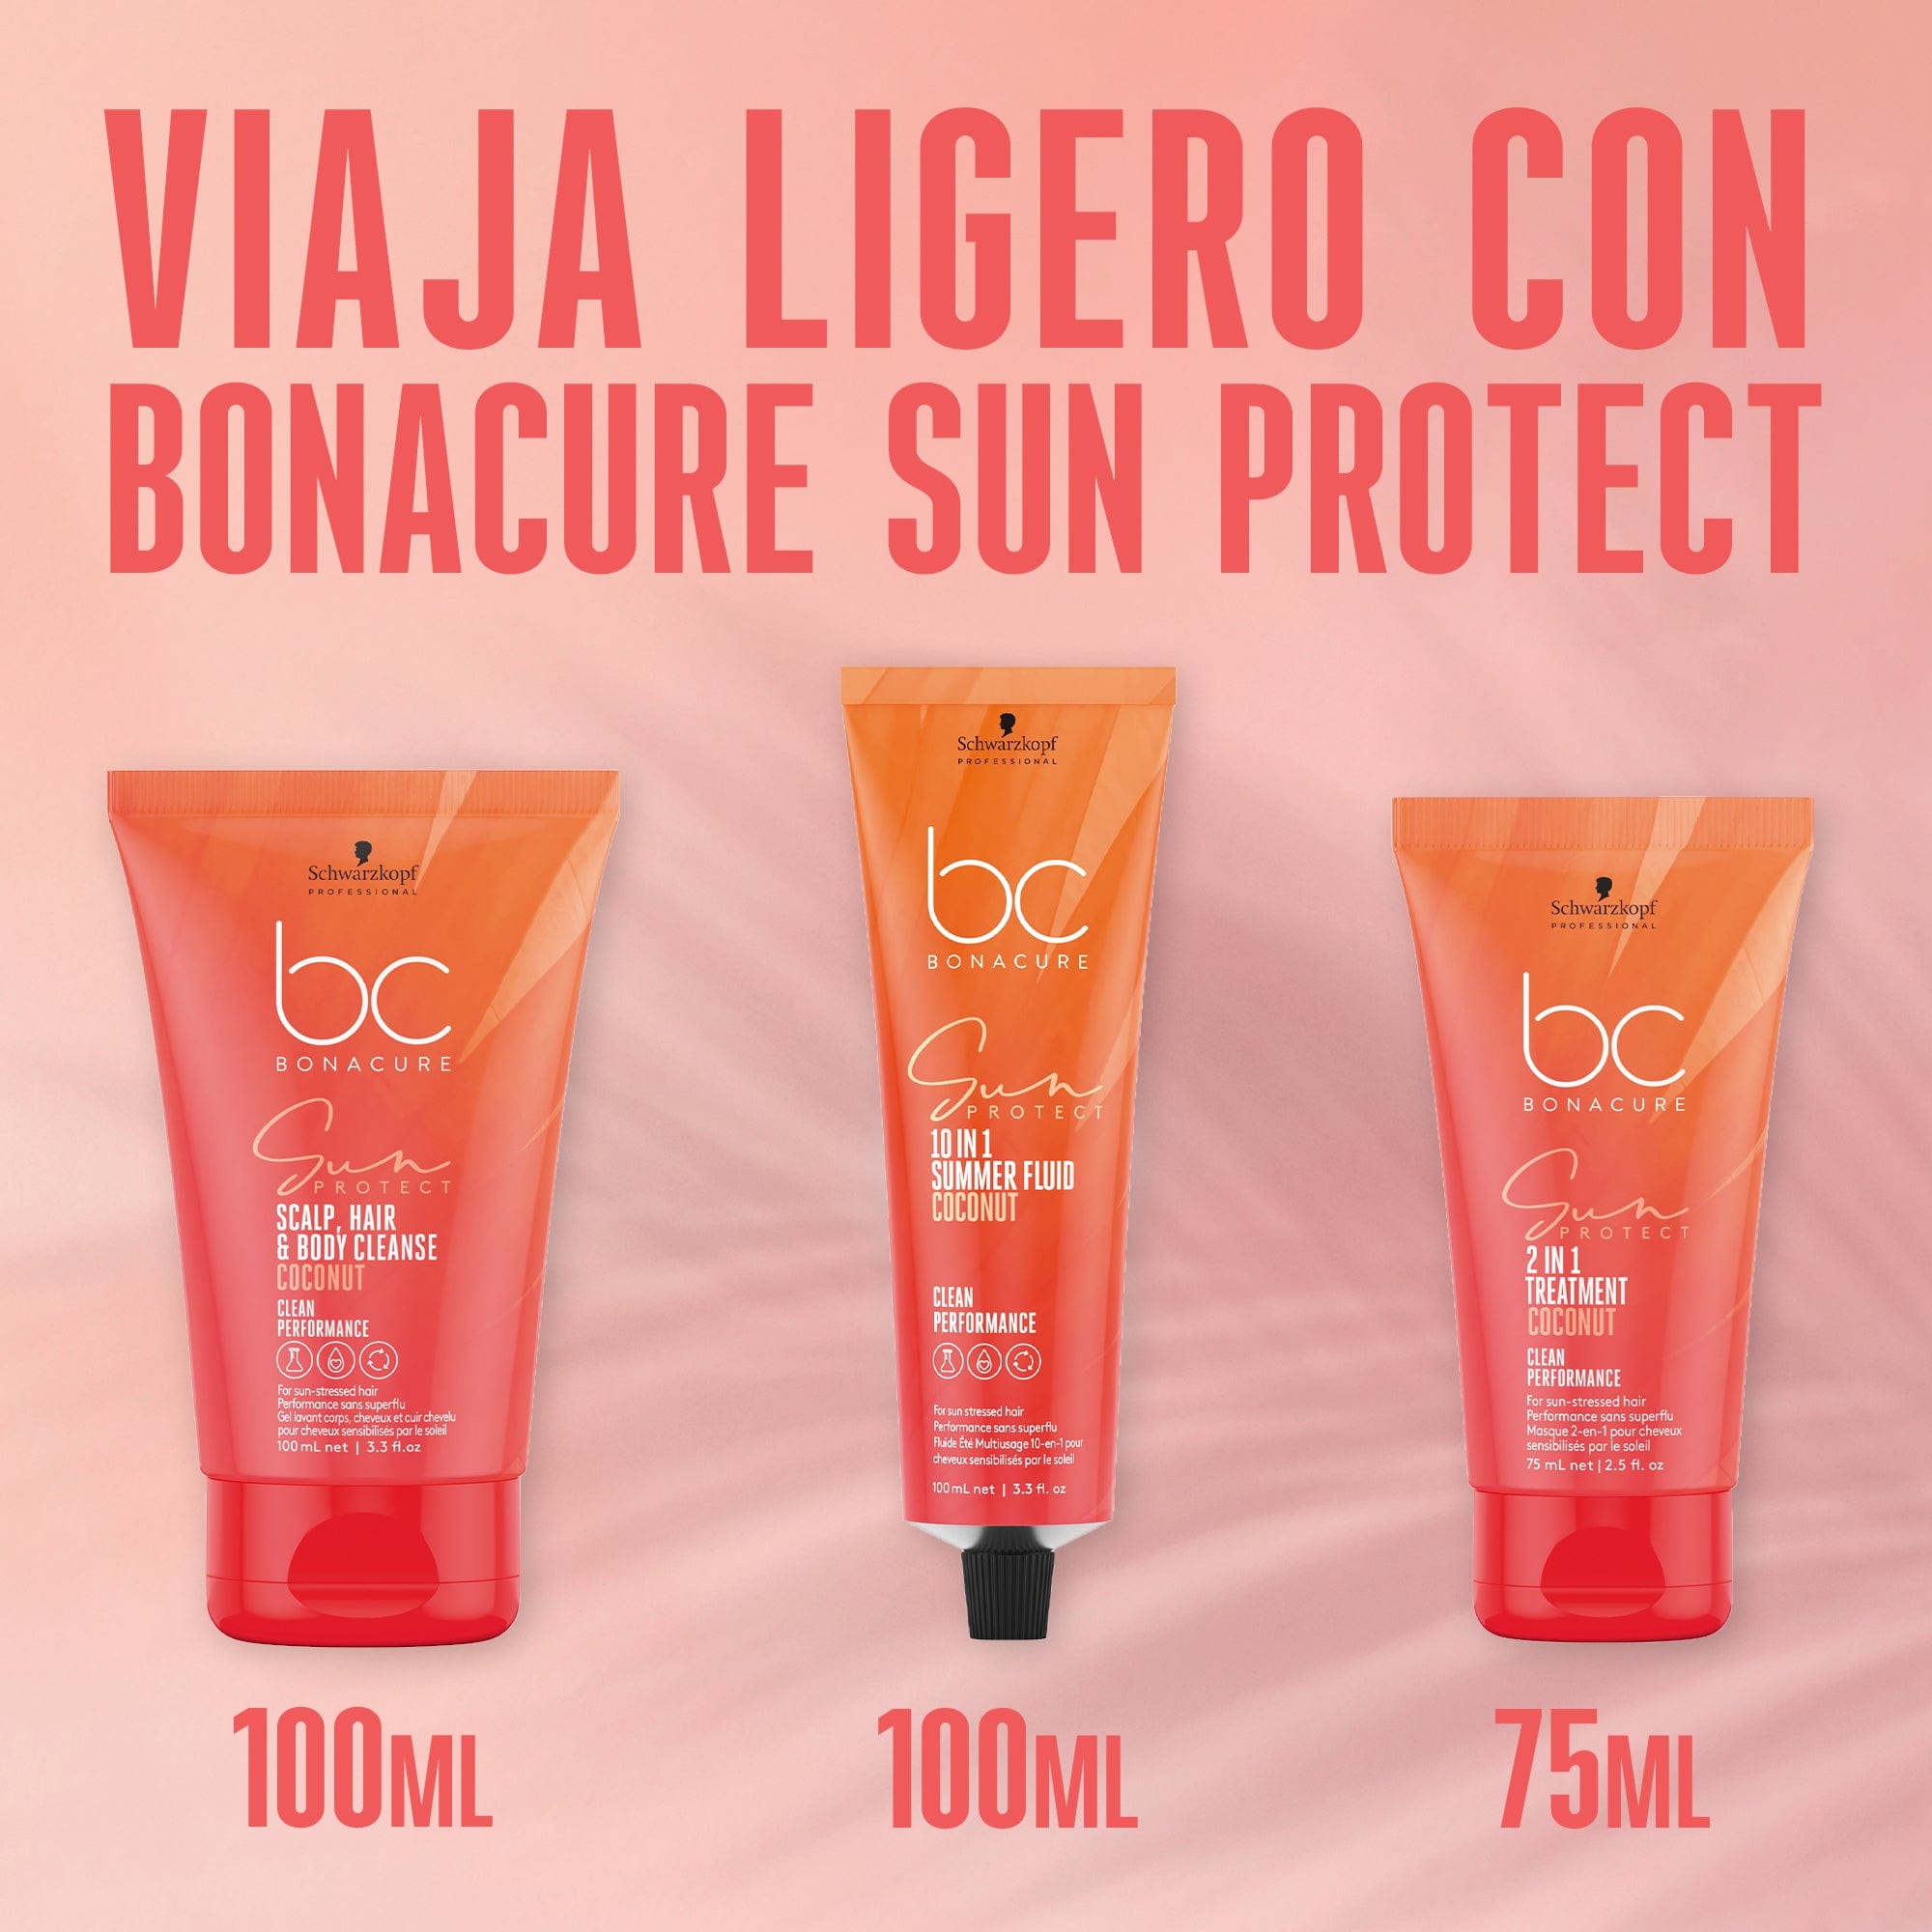 Bonacure Champú Bonacure Sun Protect Fluido de Verano 10en1 100ml Roberta Beauty Club Tienda Online Productos de Peluqueria